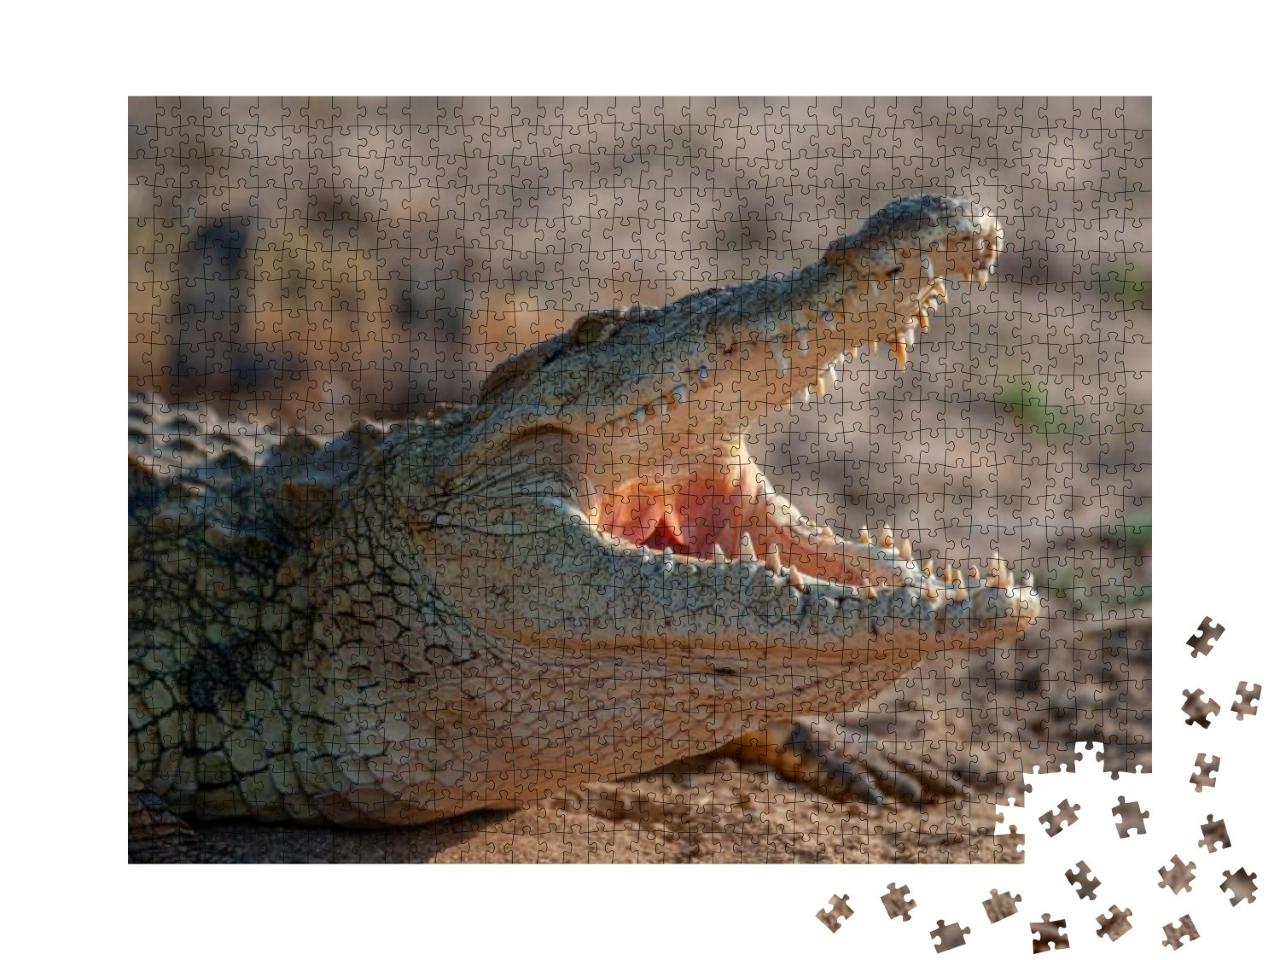 Puzzle 1000 Teile „Ein Nilkrokodil, gesehen auf einer Safari in Südafrika“